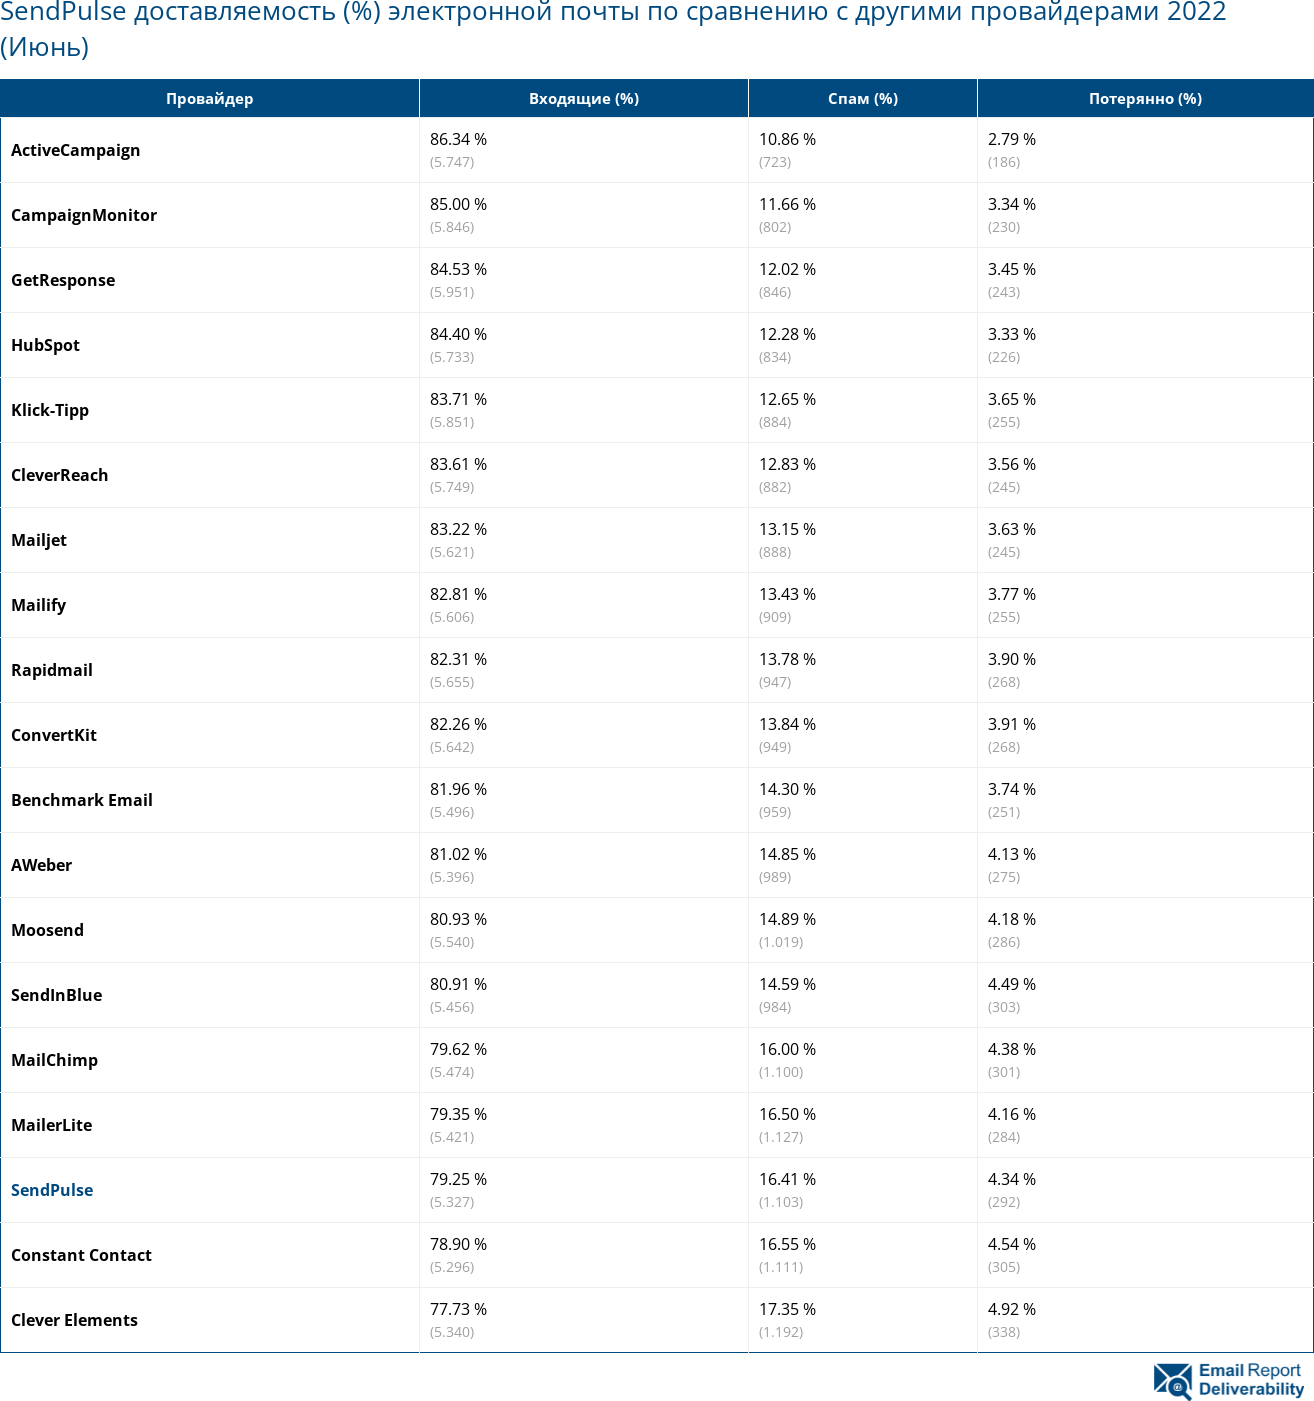 SendPulse доставляемость (%) электронной почты по сравнению с другими провайдерами 2022 (Июнь)